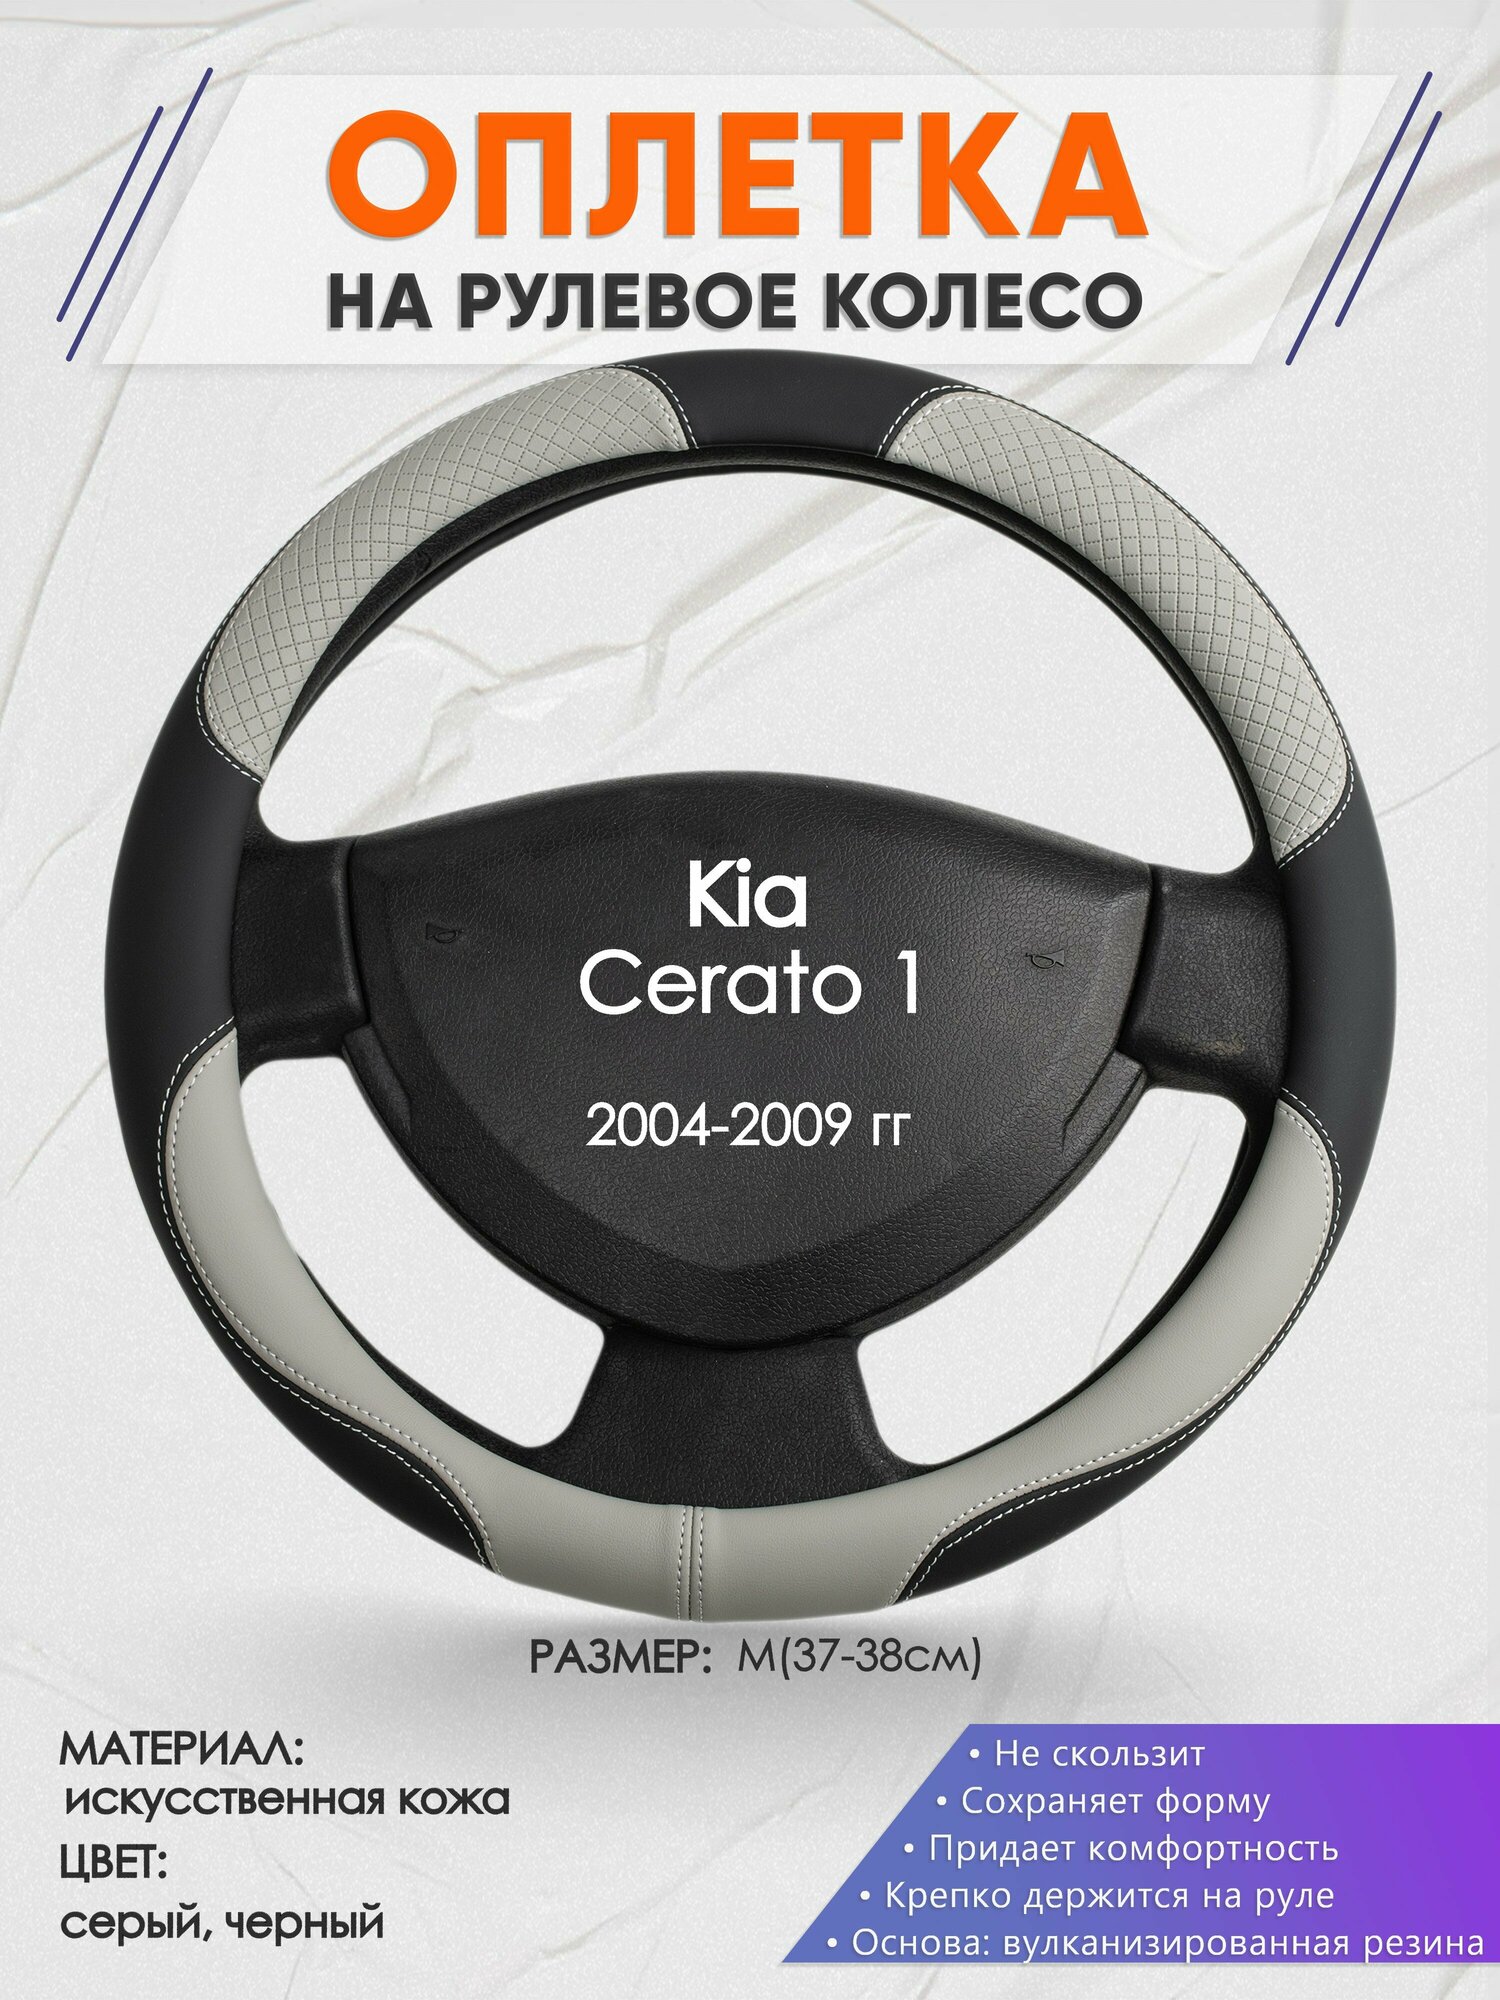 Оплетка на руль для Kia Cerato 1(Киа Церато 1 поколения) 2004-2009 M(37-38см) Искусственная кожа 12